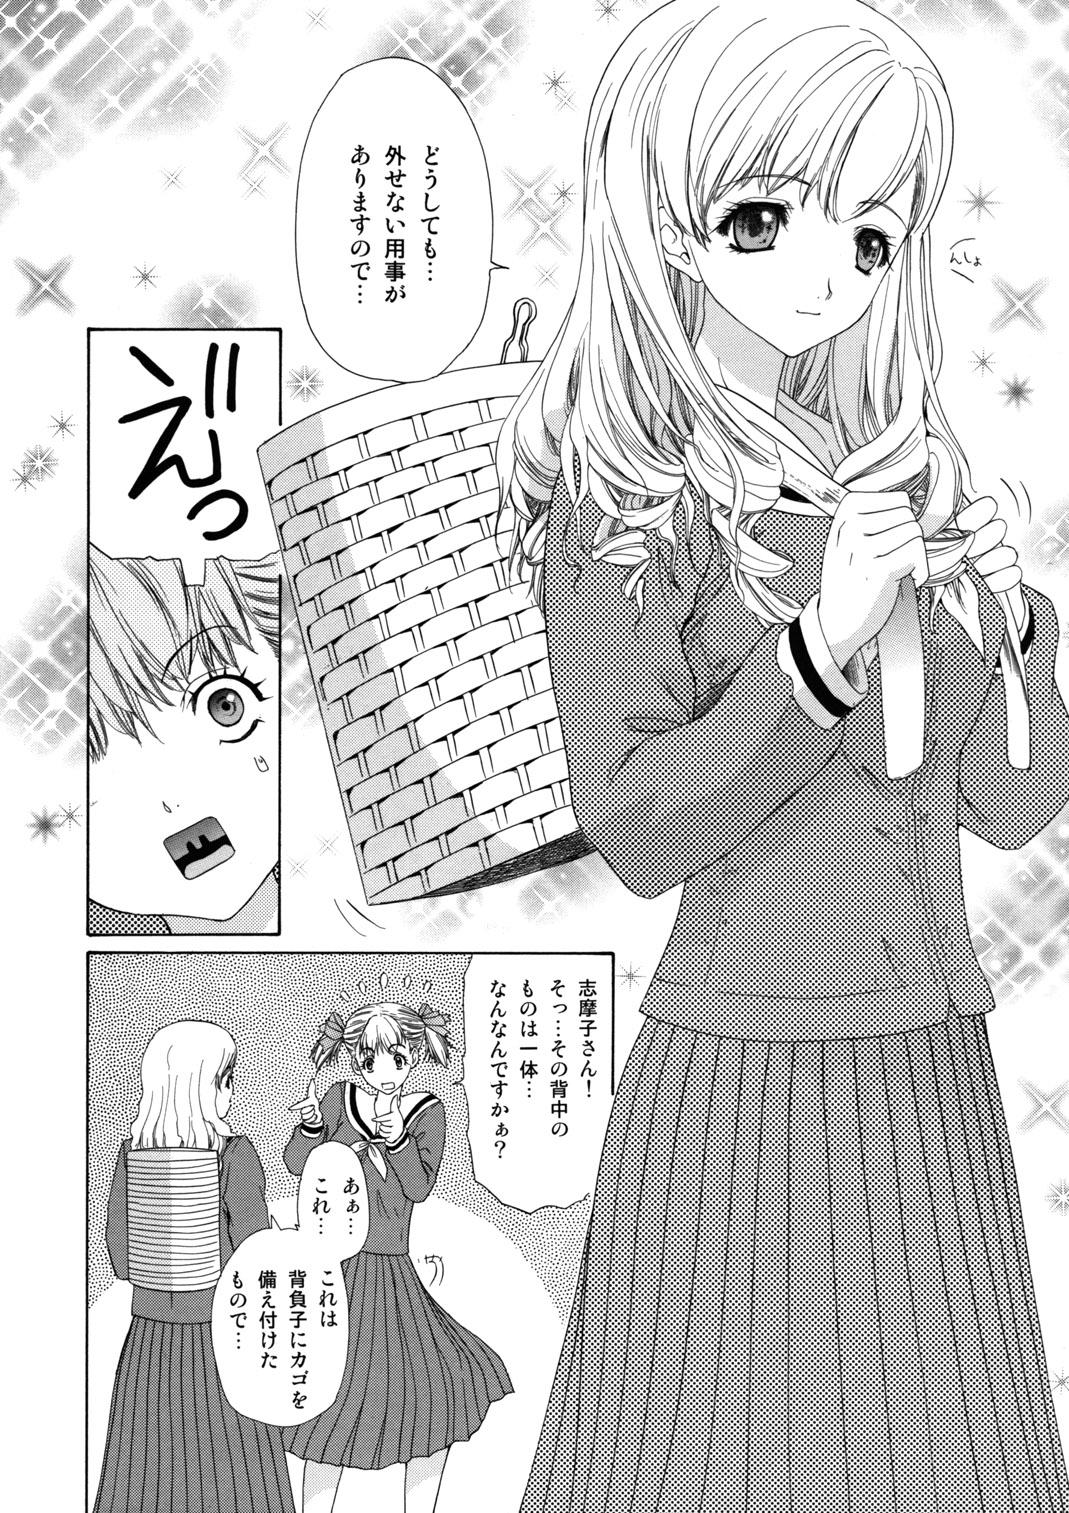 Pendeja Tenshi no Tameiki - Maria sama ga miteru Good - Page 9